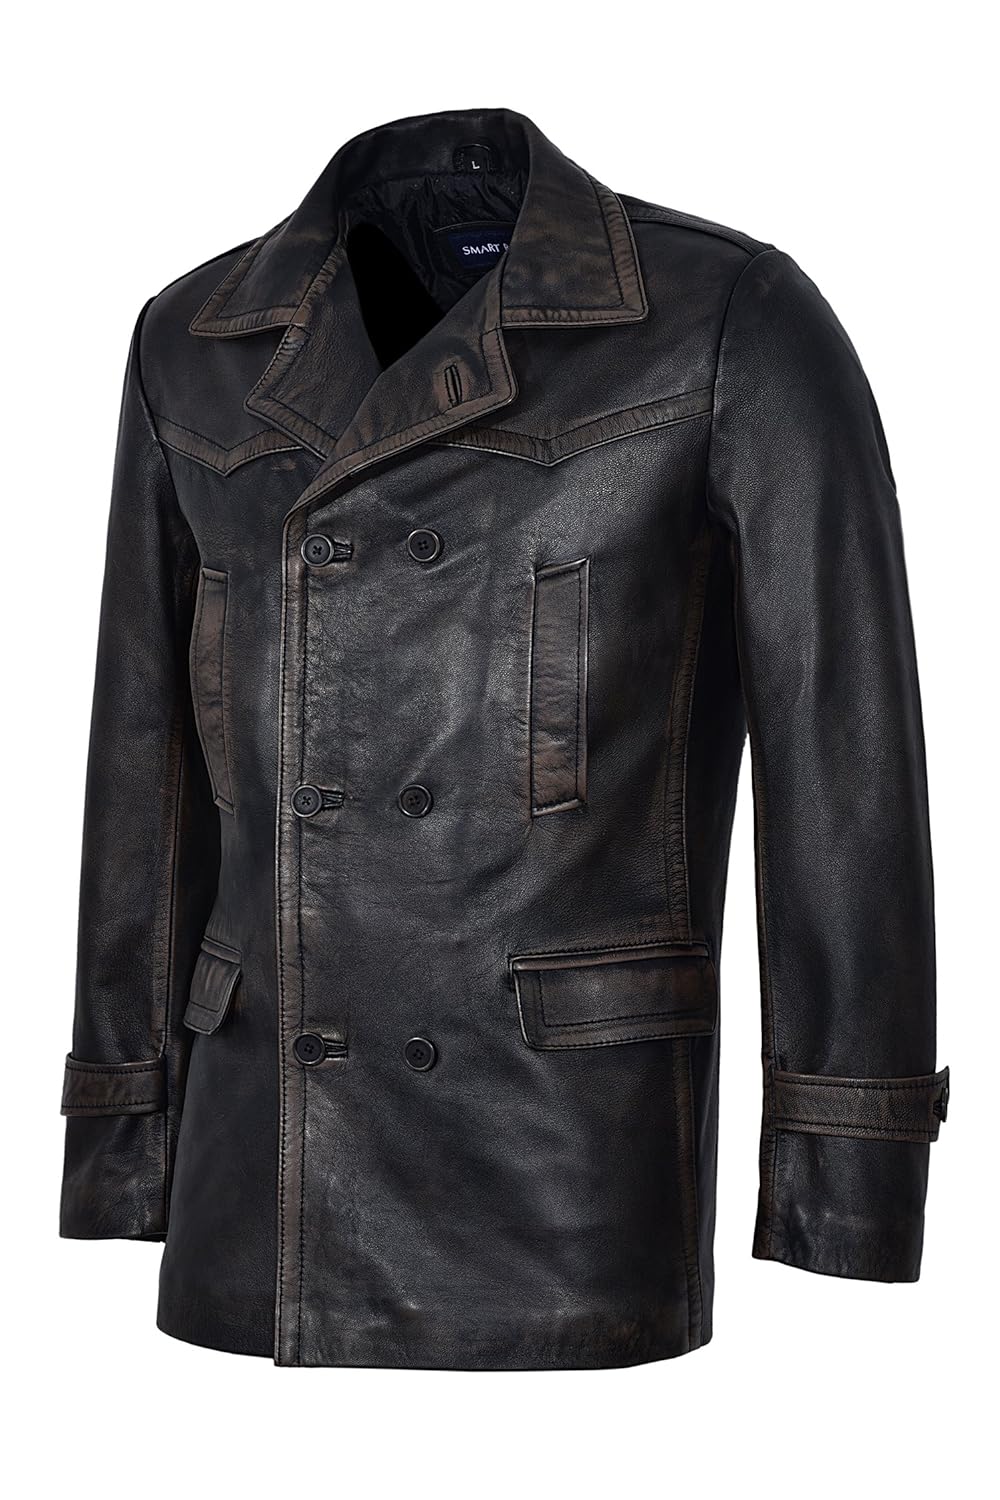 Vintage world war ii jackets